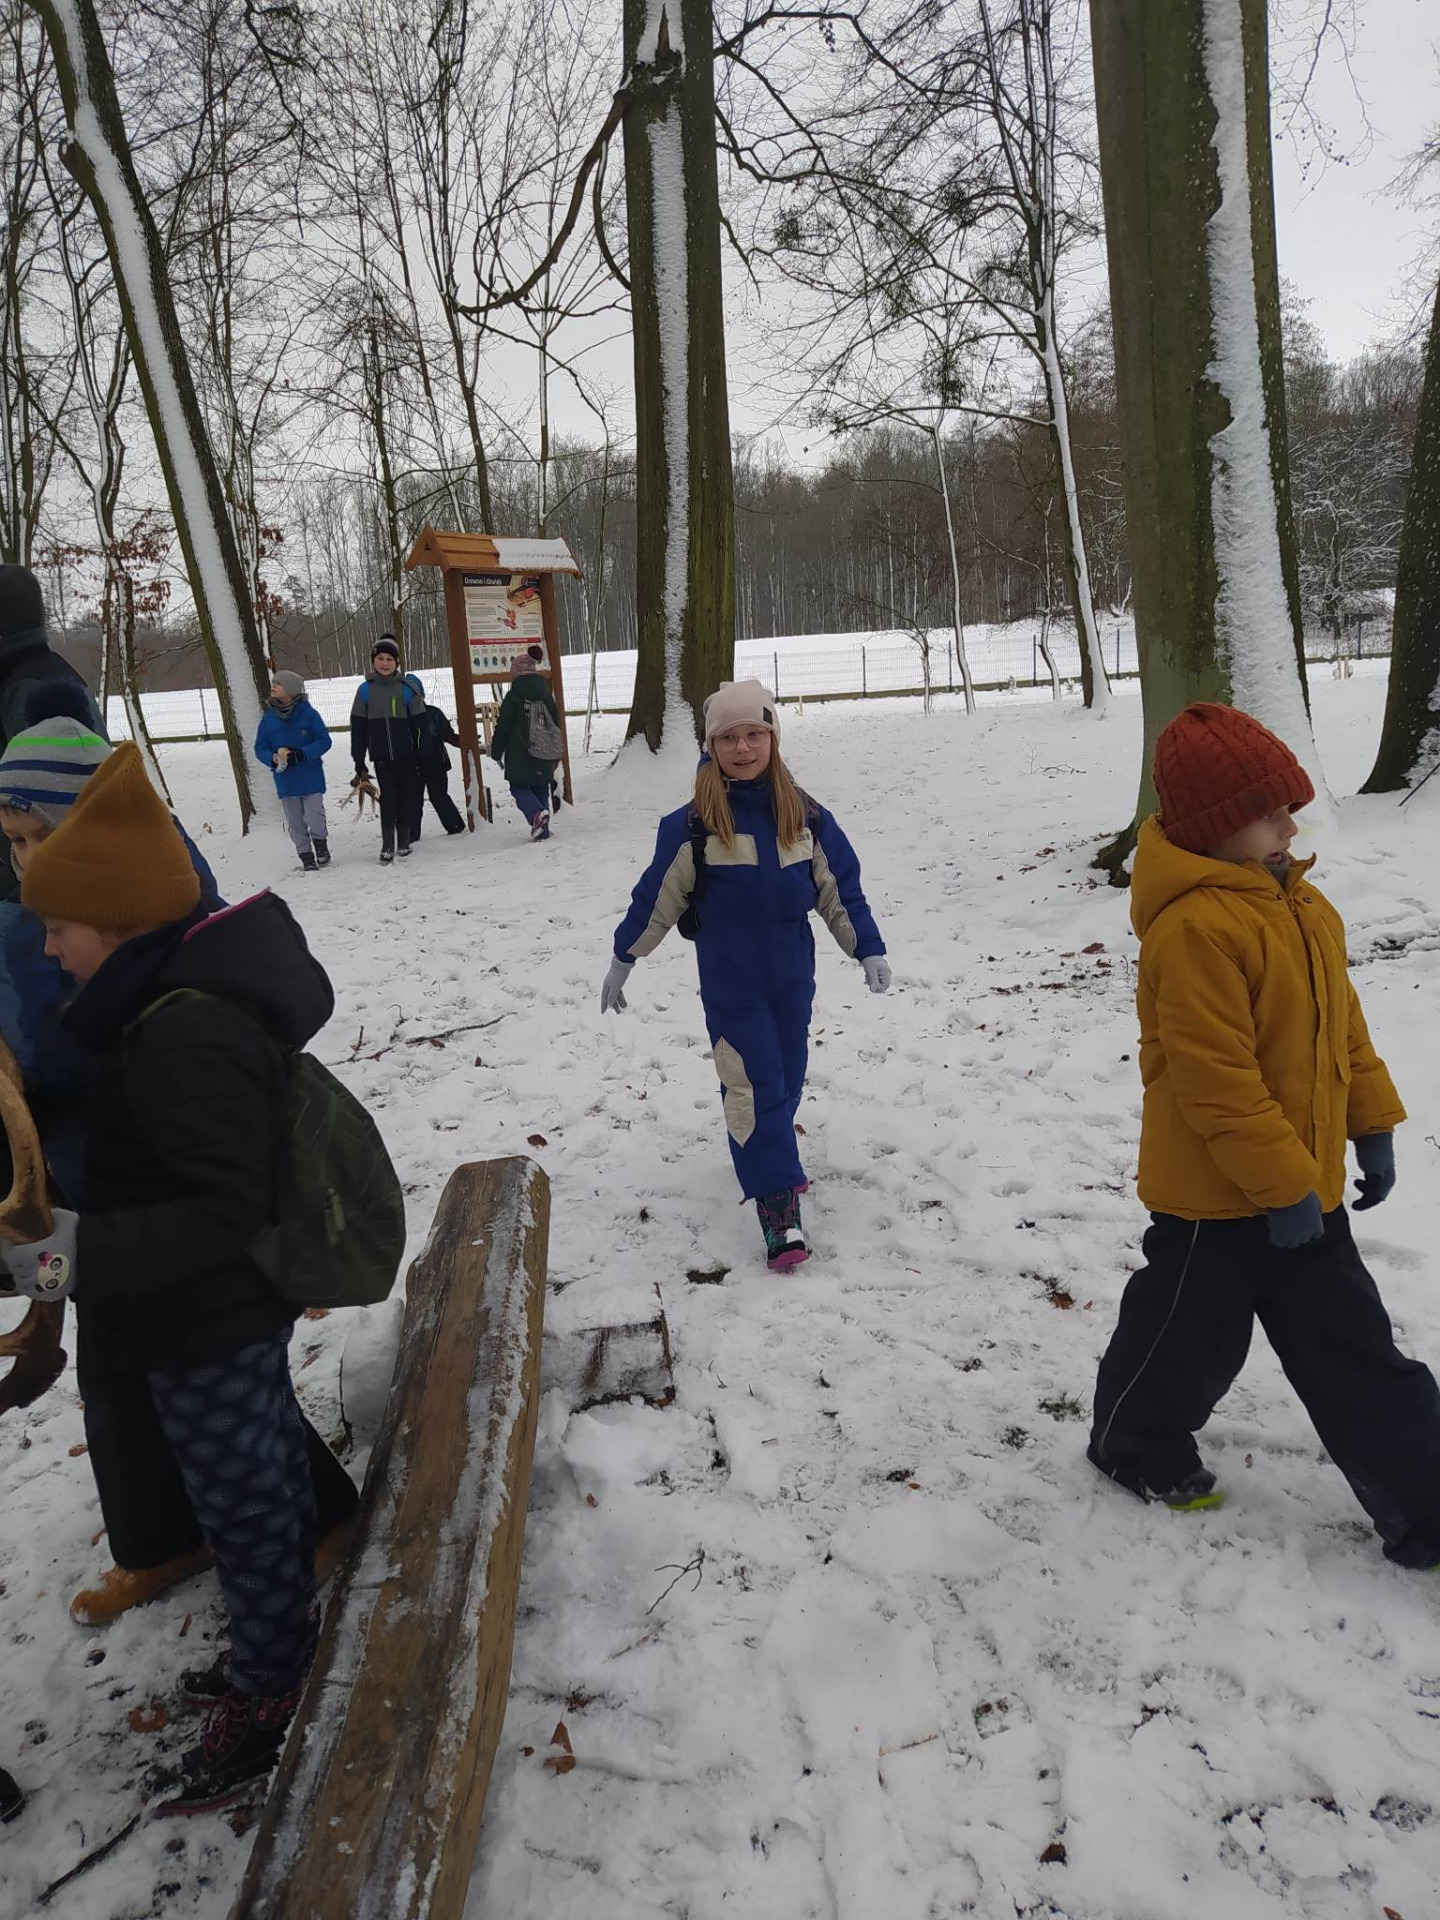 Dzieci bawią się na śniegu